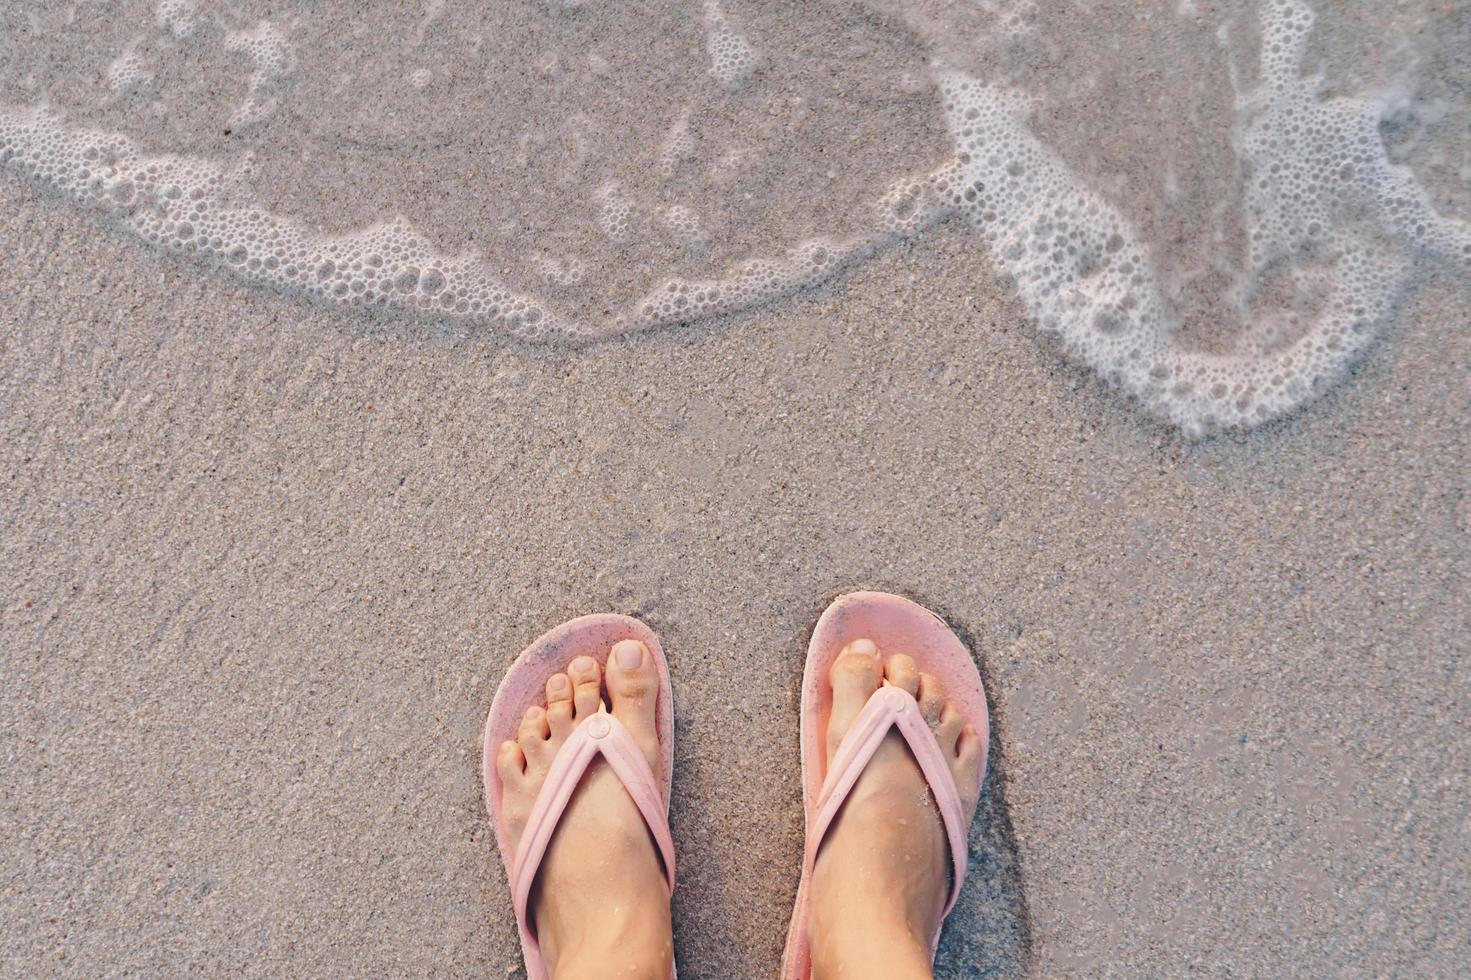 vista dall'alto dei piedi di una donna che indossa pantofole in piedi su una spiaggia di sabbia con le onde del mare foto